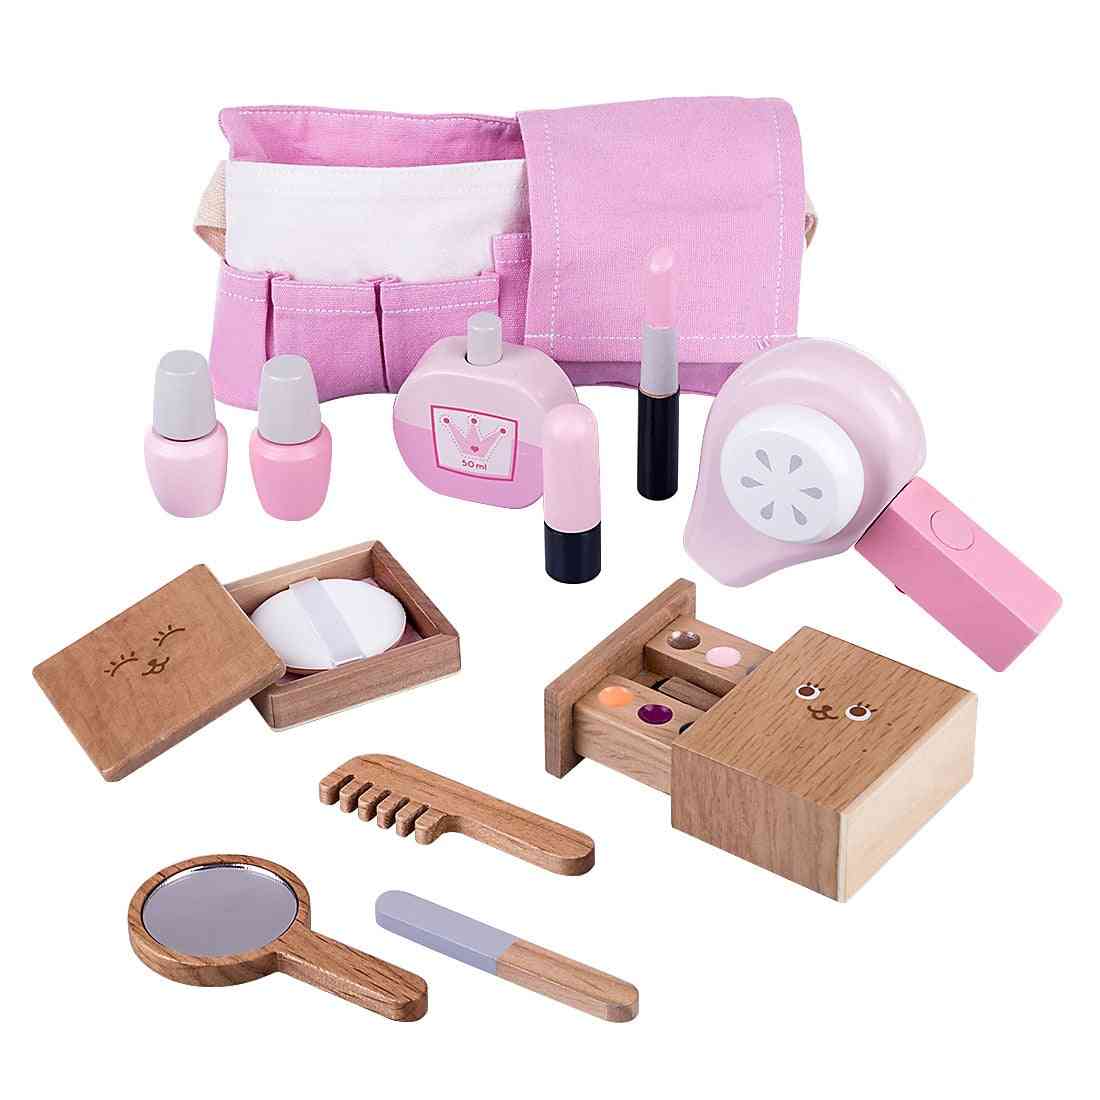 12db-os gyermek fából készült smink színlelt játékkészlet, szimulációs hajszárítós játékok lányos gyerekeknek